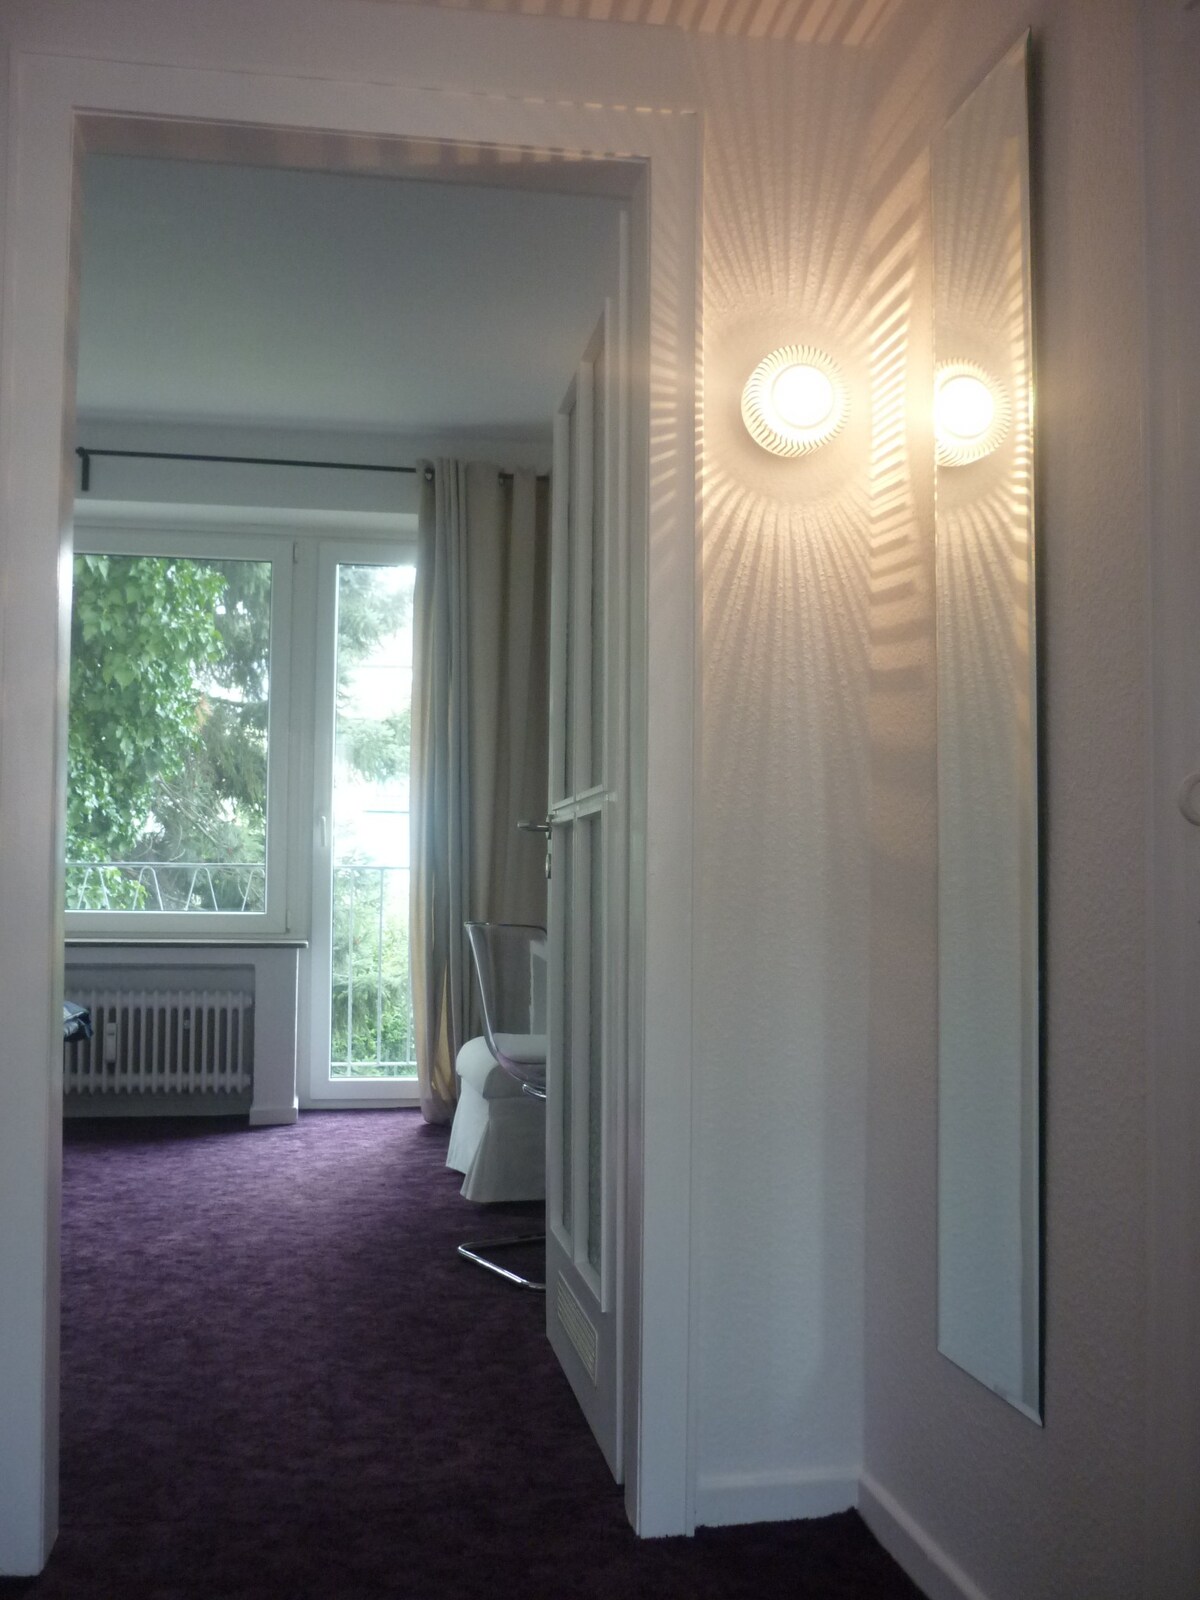 Köln-Mülheim的舒适公寓